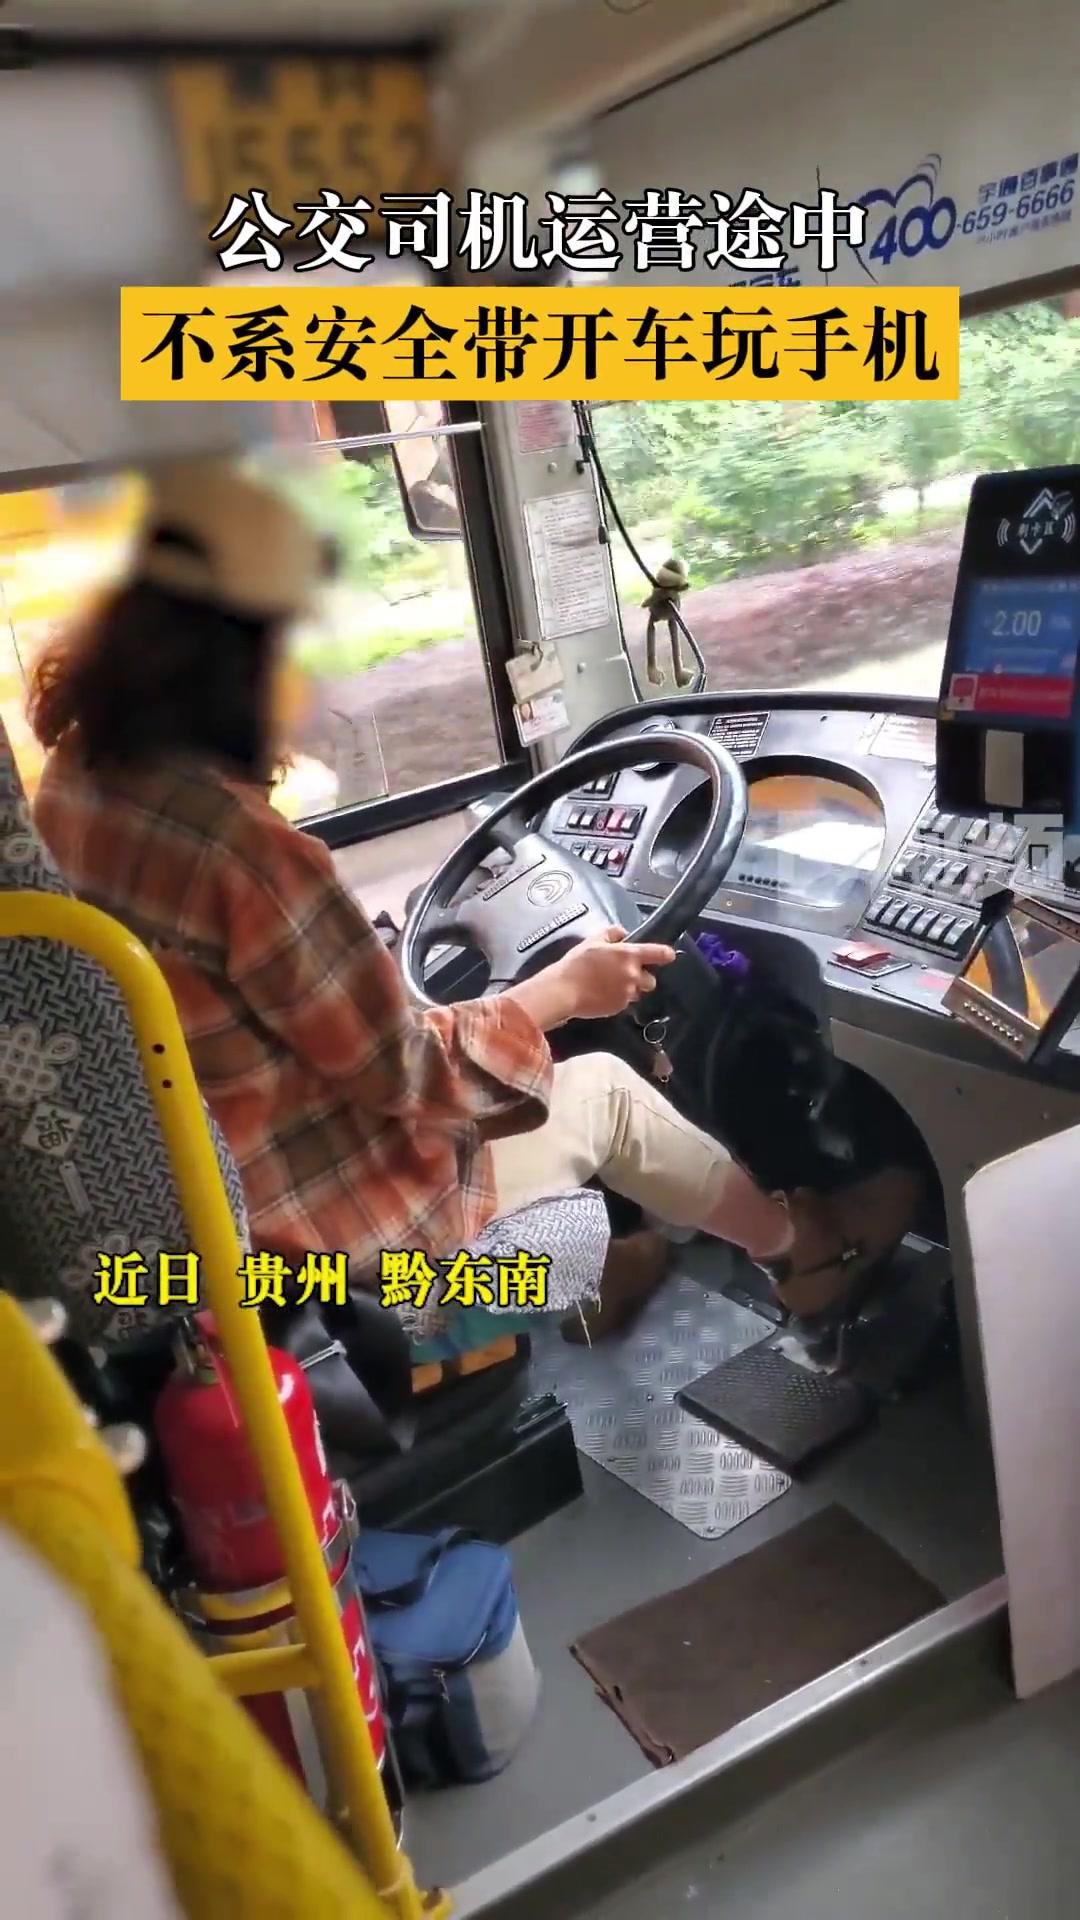 公交司机开车玩手机新闻公交司机开车慢可以投诉吗-第2张图片-果博